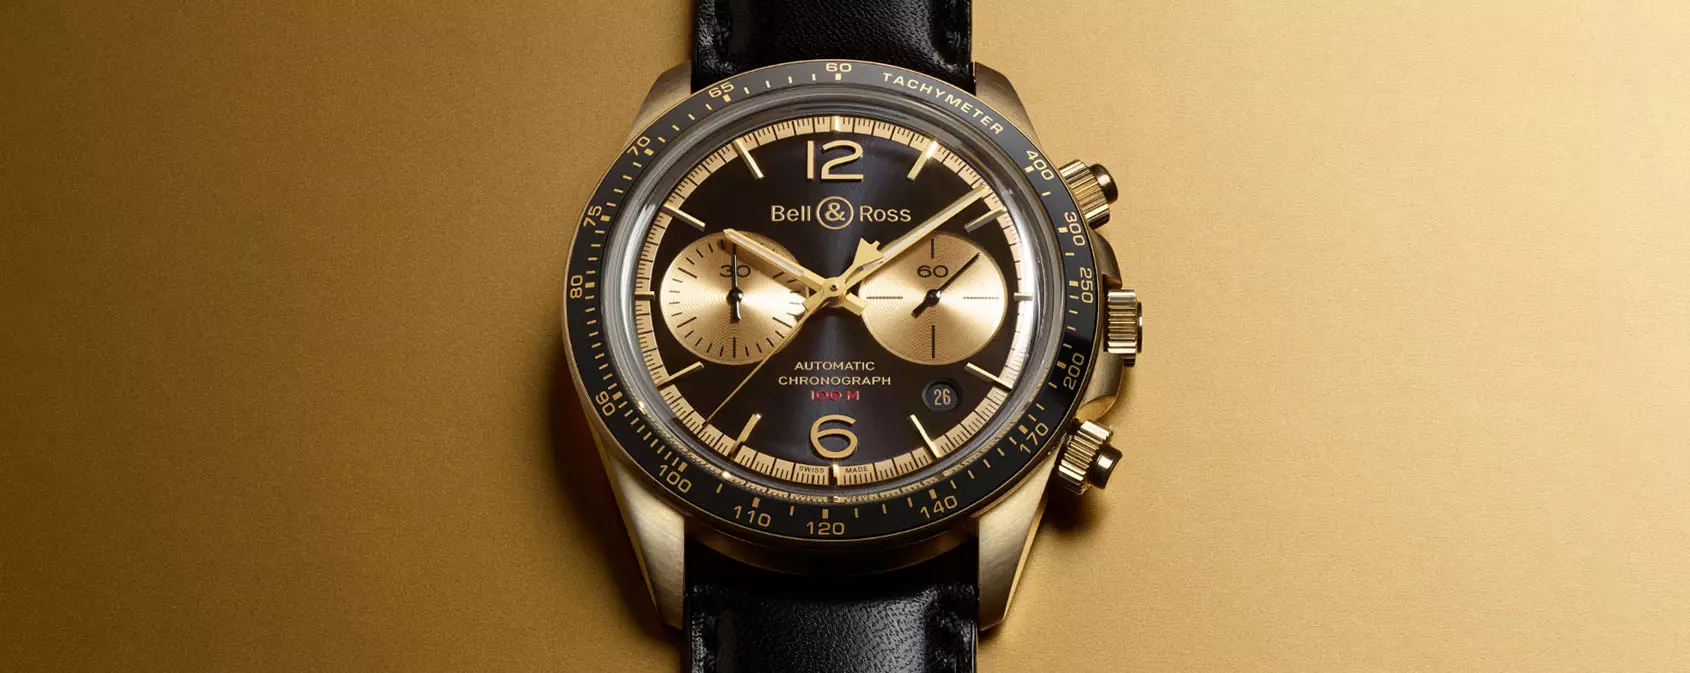 5 najlepszych zegarków Baselworld (z ograniczonym budżetem)